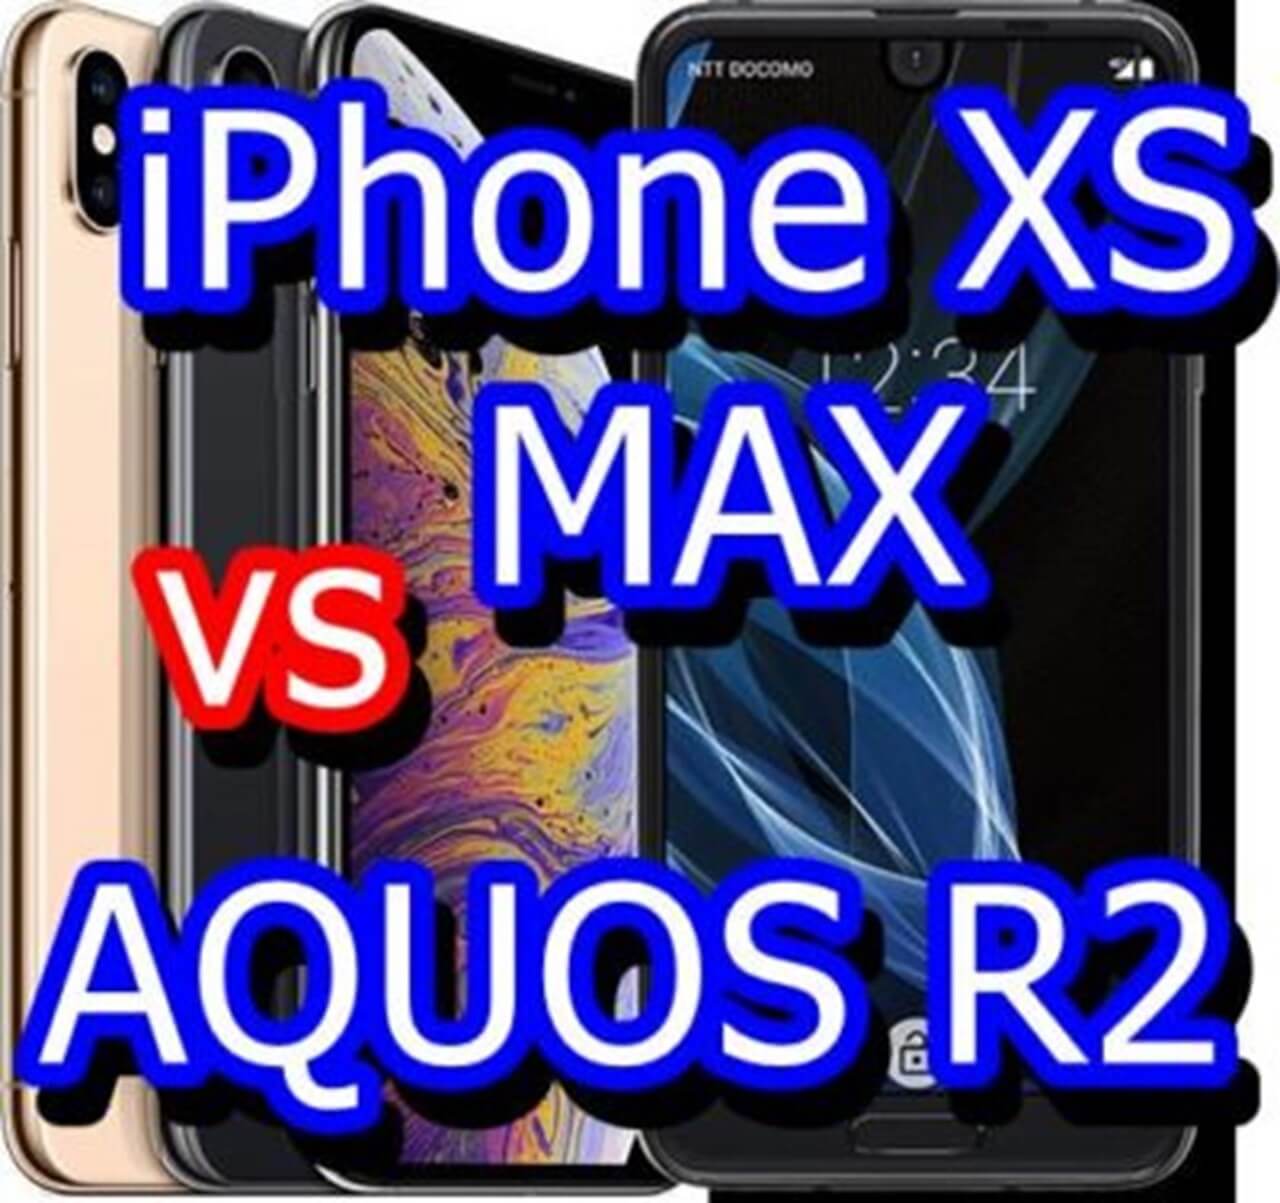 iPhone XS MAXとAQUOS R2